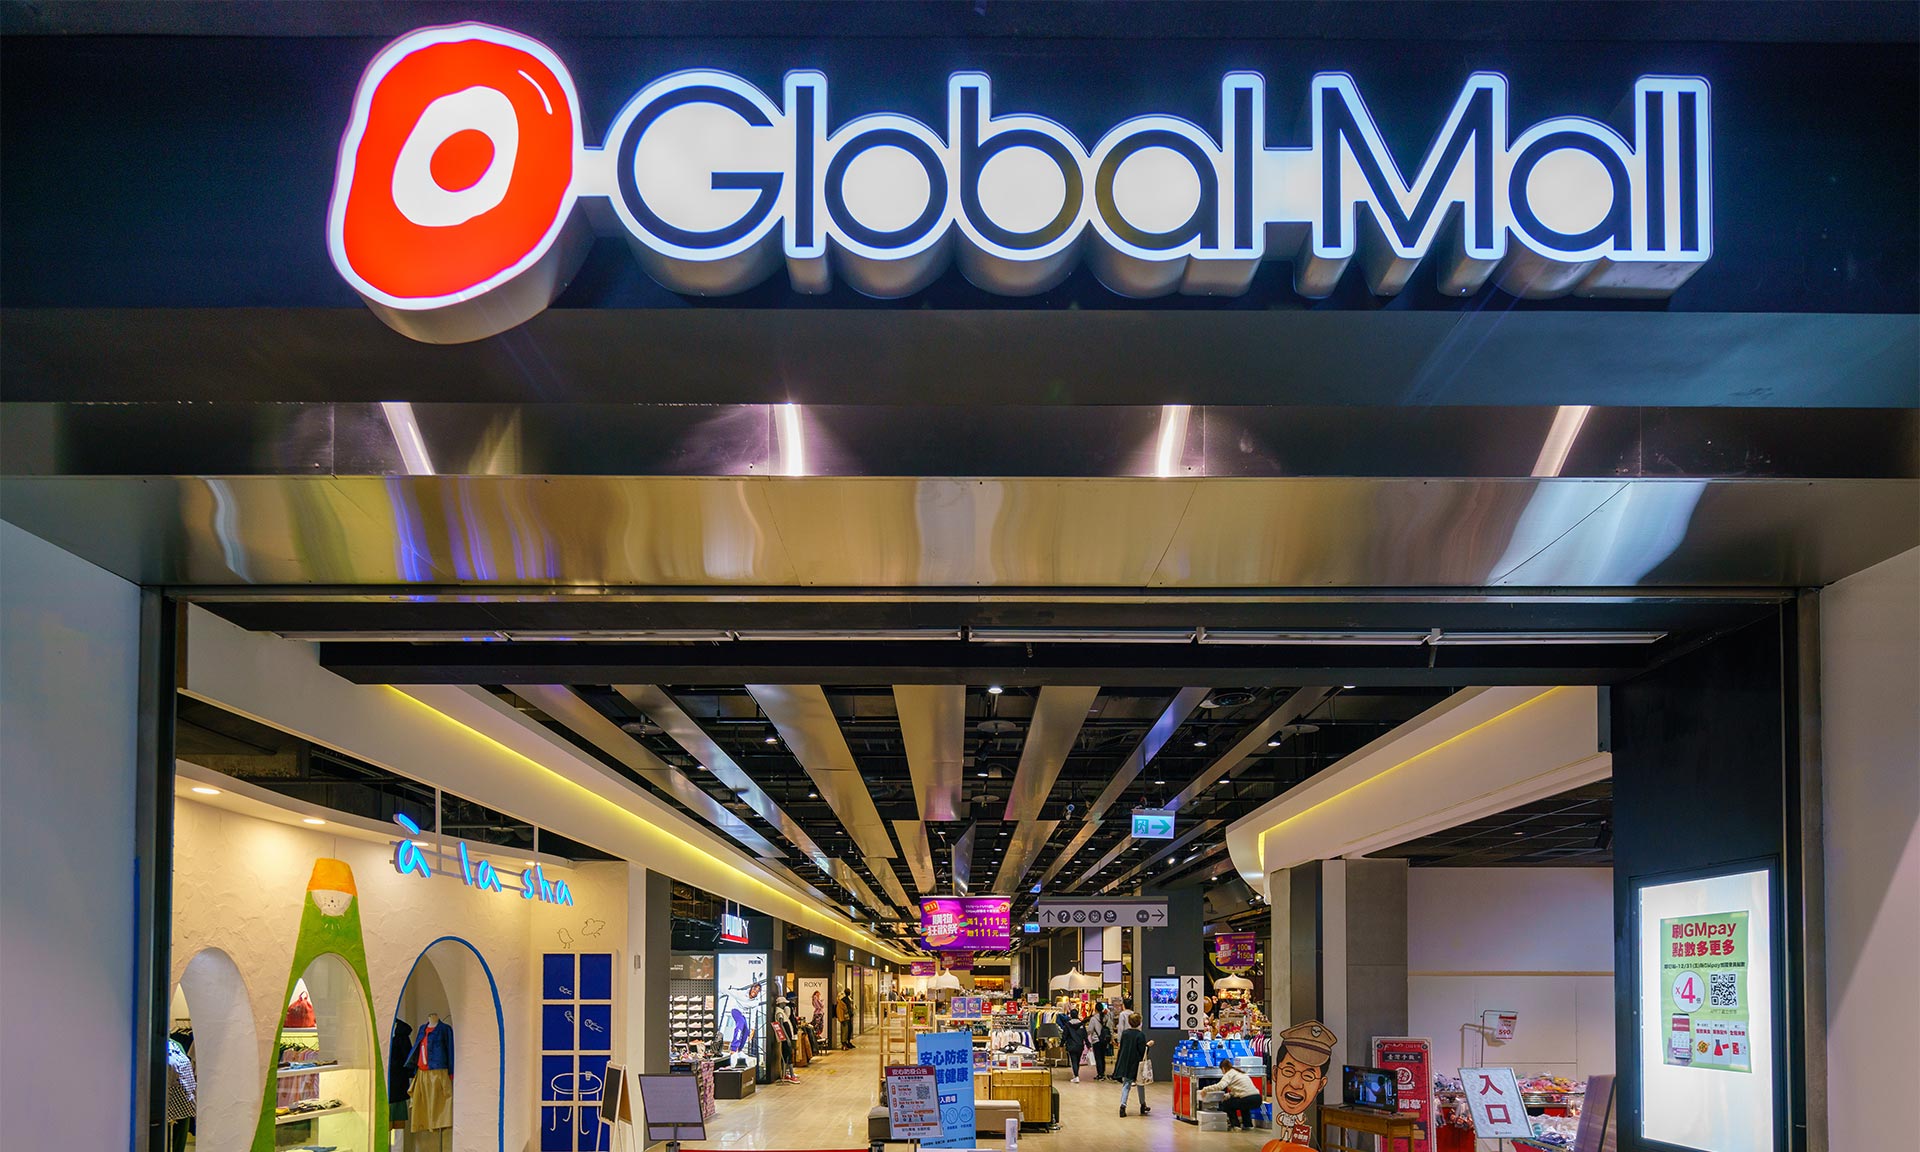 Global Mall